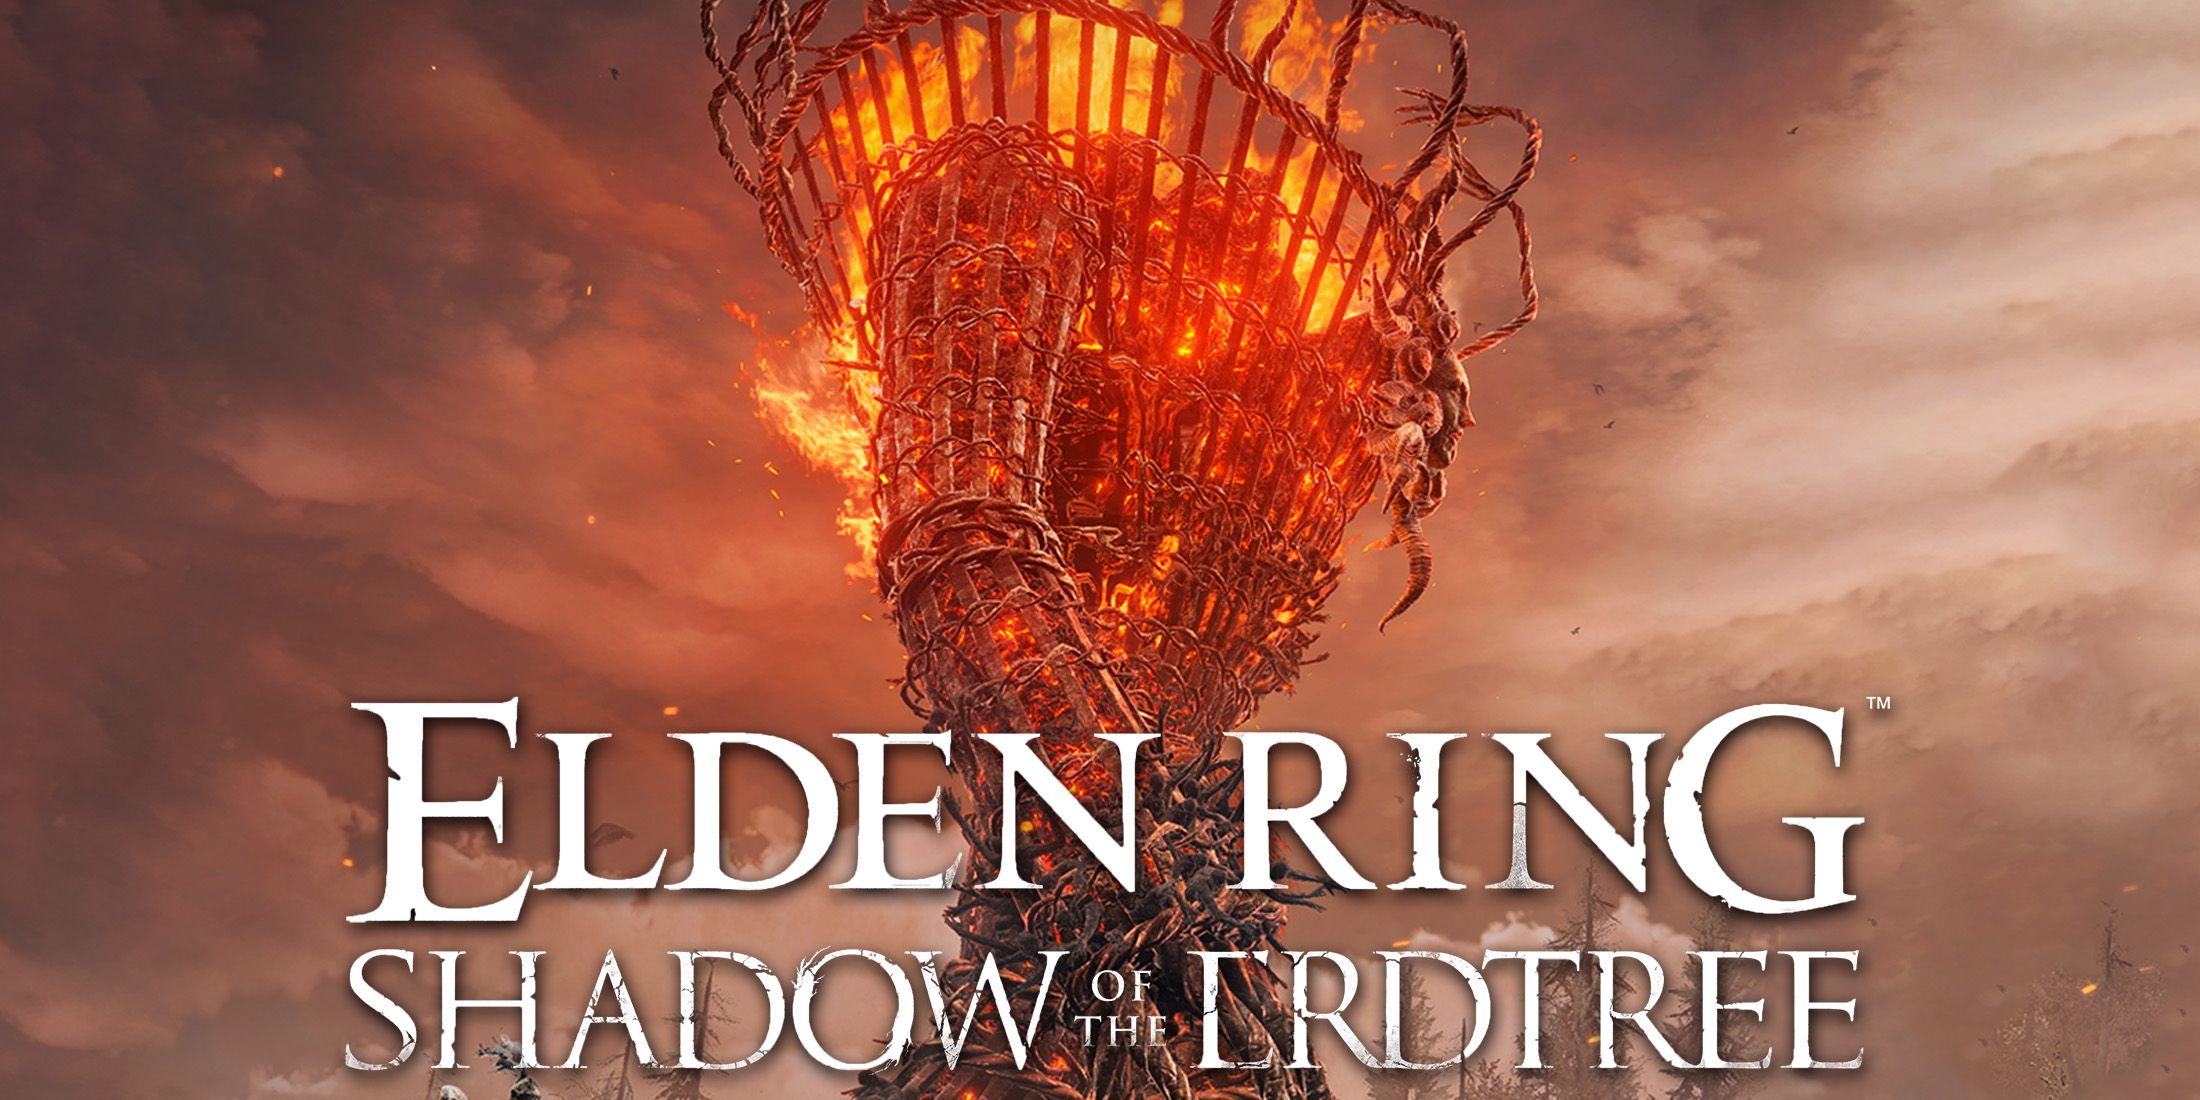 Elden Ring Shadow of the Erdtree white logo over Furnace Golem screenshot